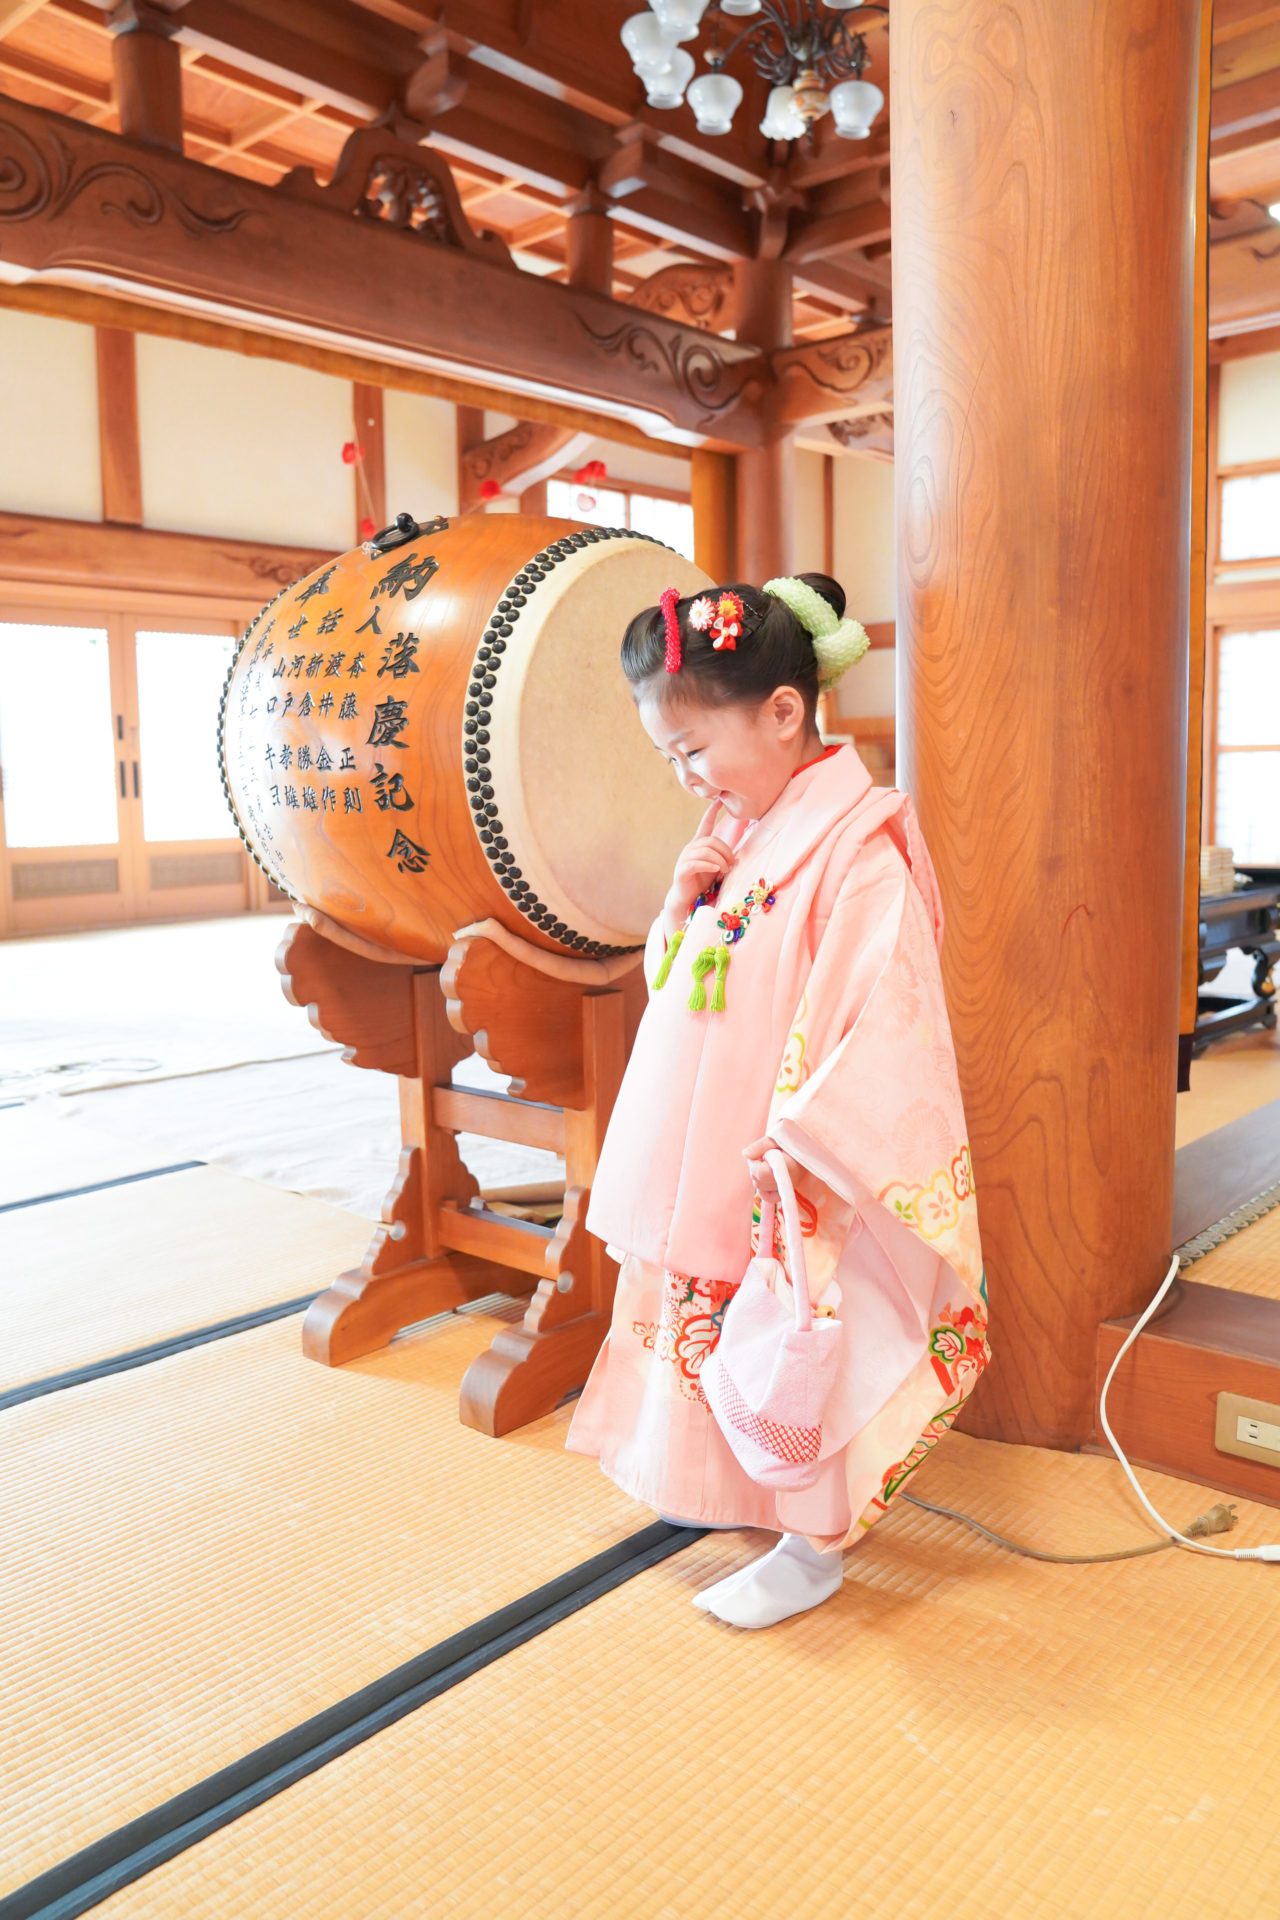 優しいピンクの着物を見に纏い、お寺の中で嬉しそうな表情の3歳の女の子の七五三